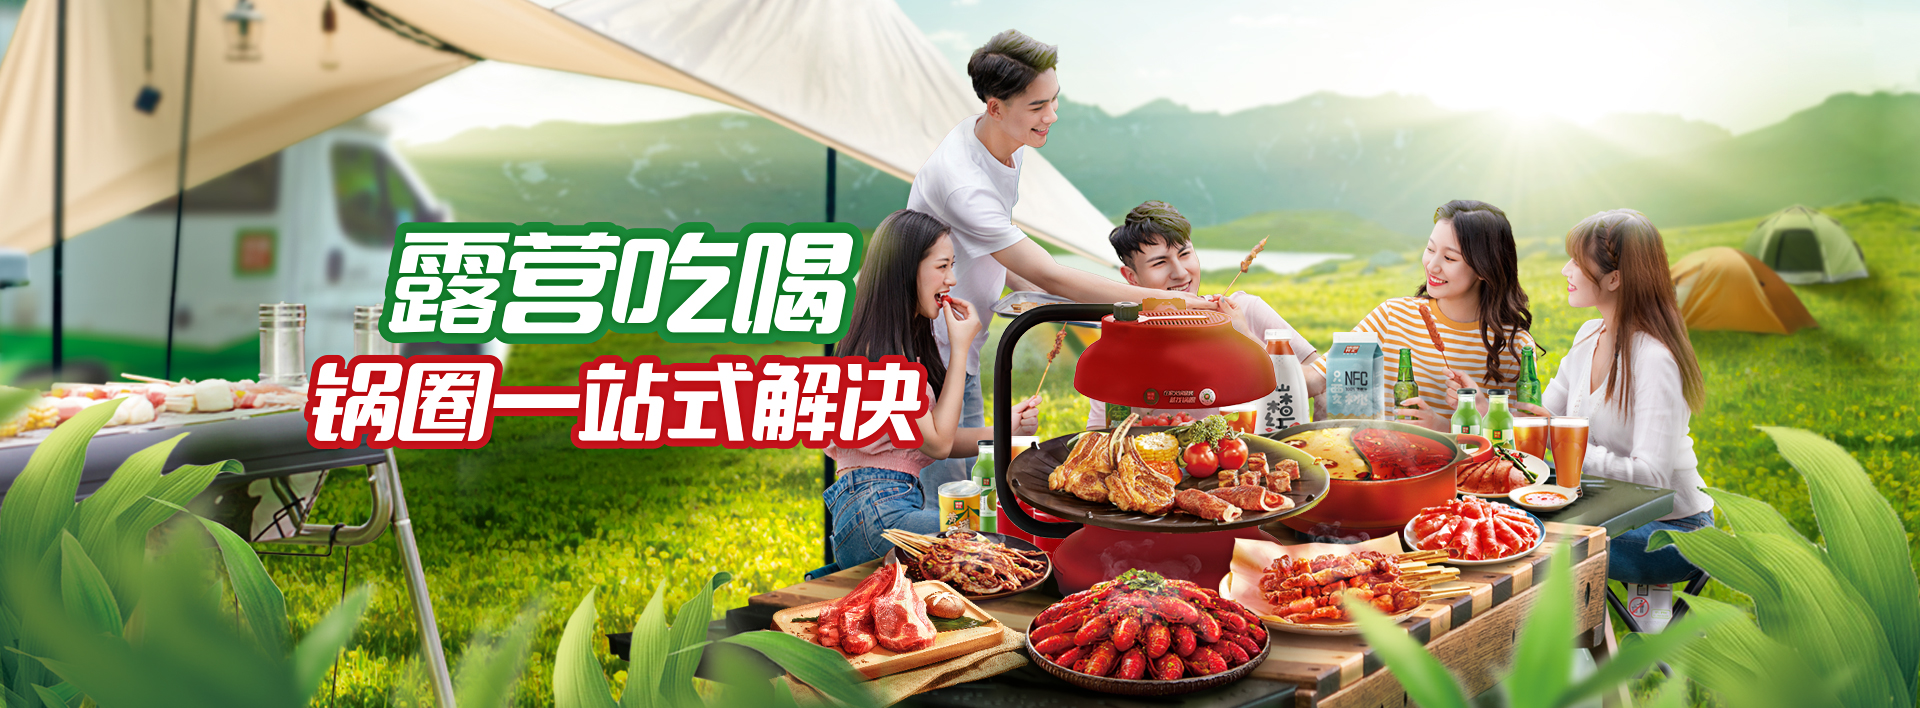  Guoquan Hot Pot Food Supermarket